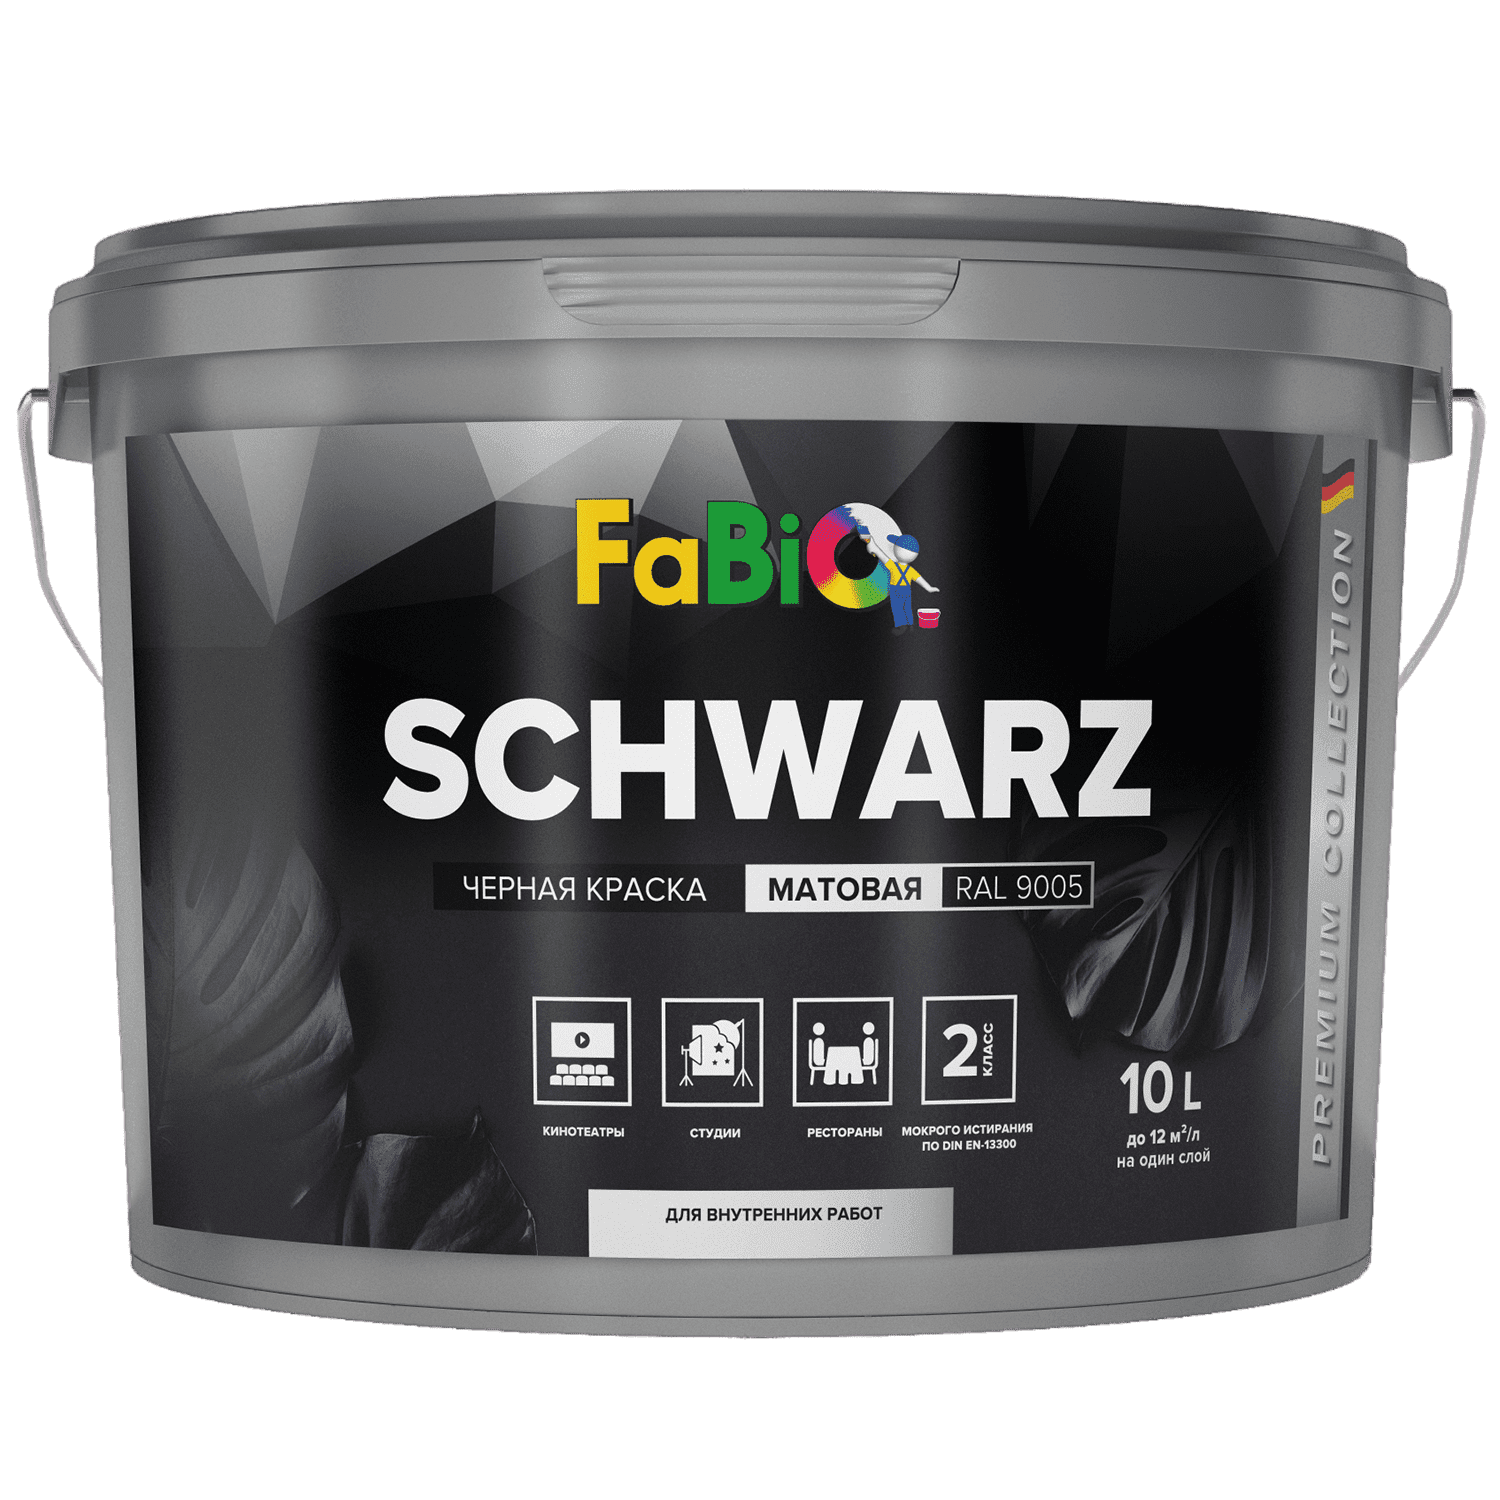 Черная краска Fabio Schwarz 5 л. для стен и потолков